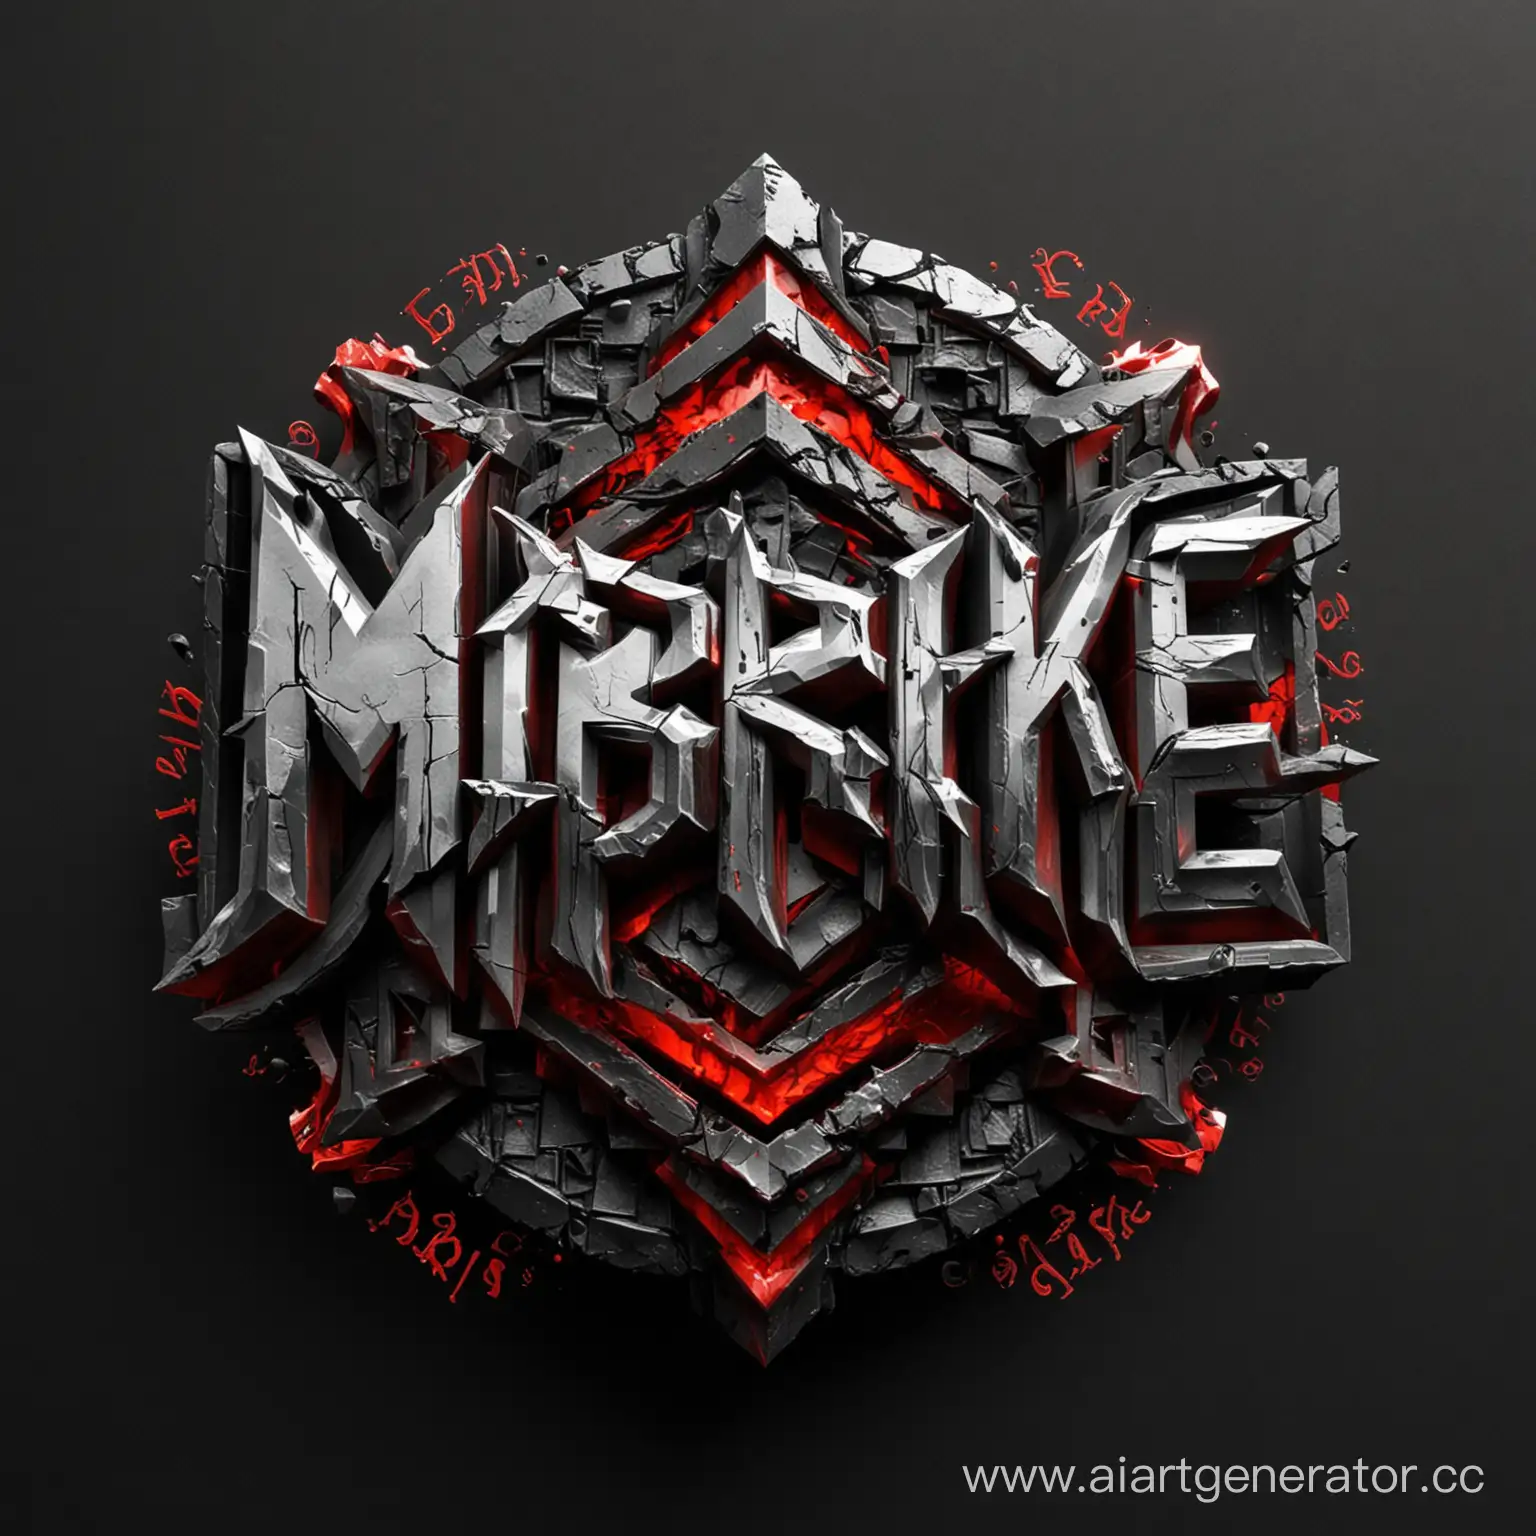 Сделай логотип обязательно на русском языке, название логотипа - Morskie Gadi. Тематика логотипа должна содержать частицы рок музыки, стиль логотипа 3D. Цвета чёрный и красный.
На изображении должен быть сам логотип и чёрный фон